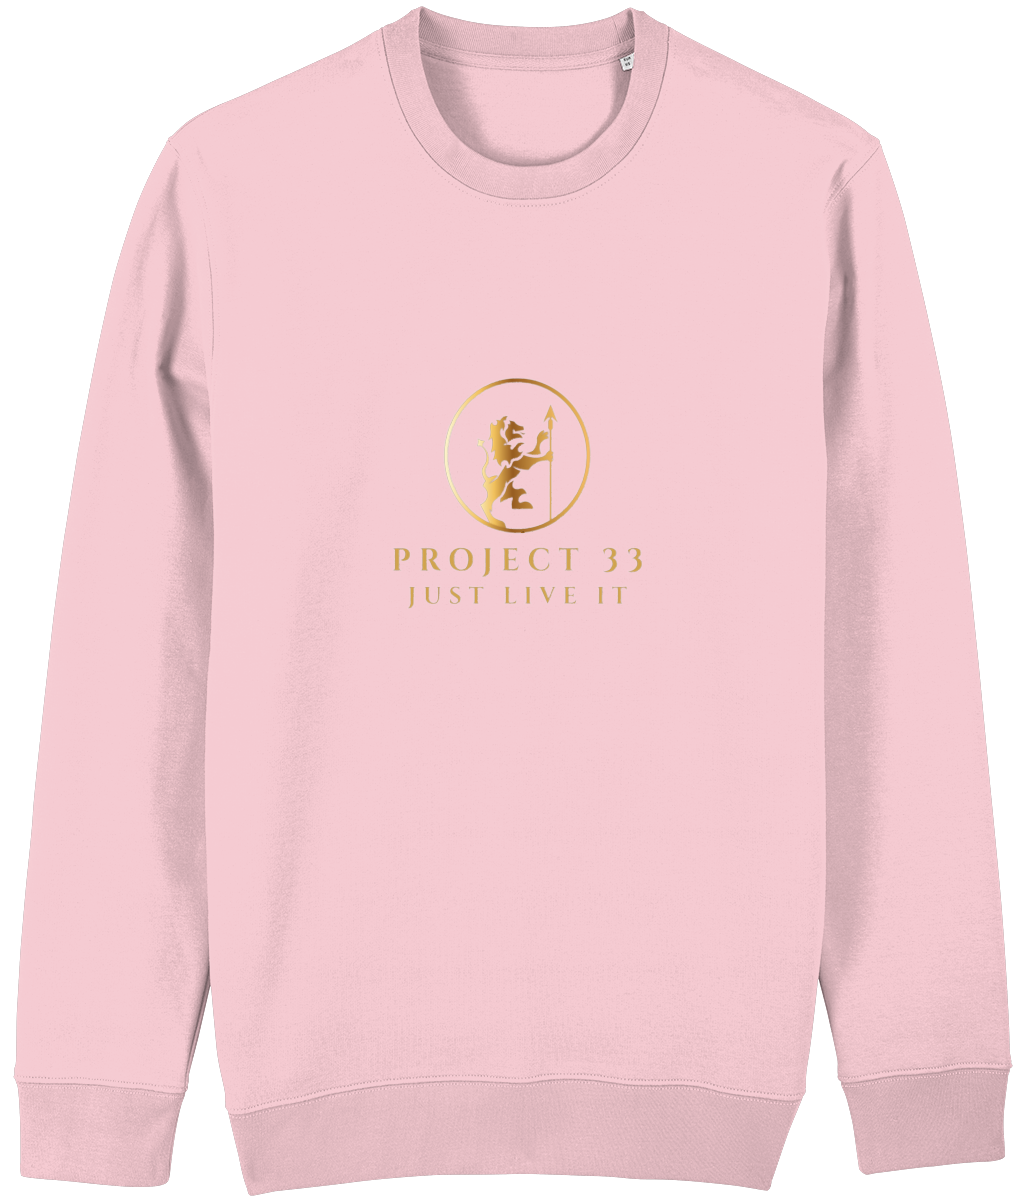 project 33 Crew Neck Sweatshirt